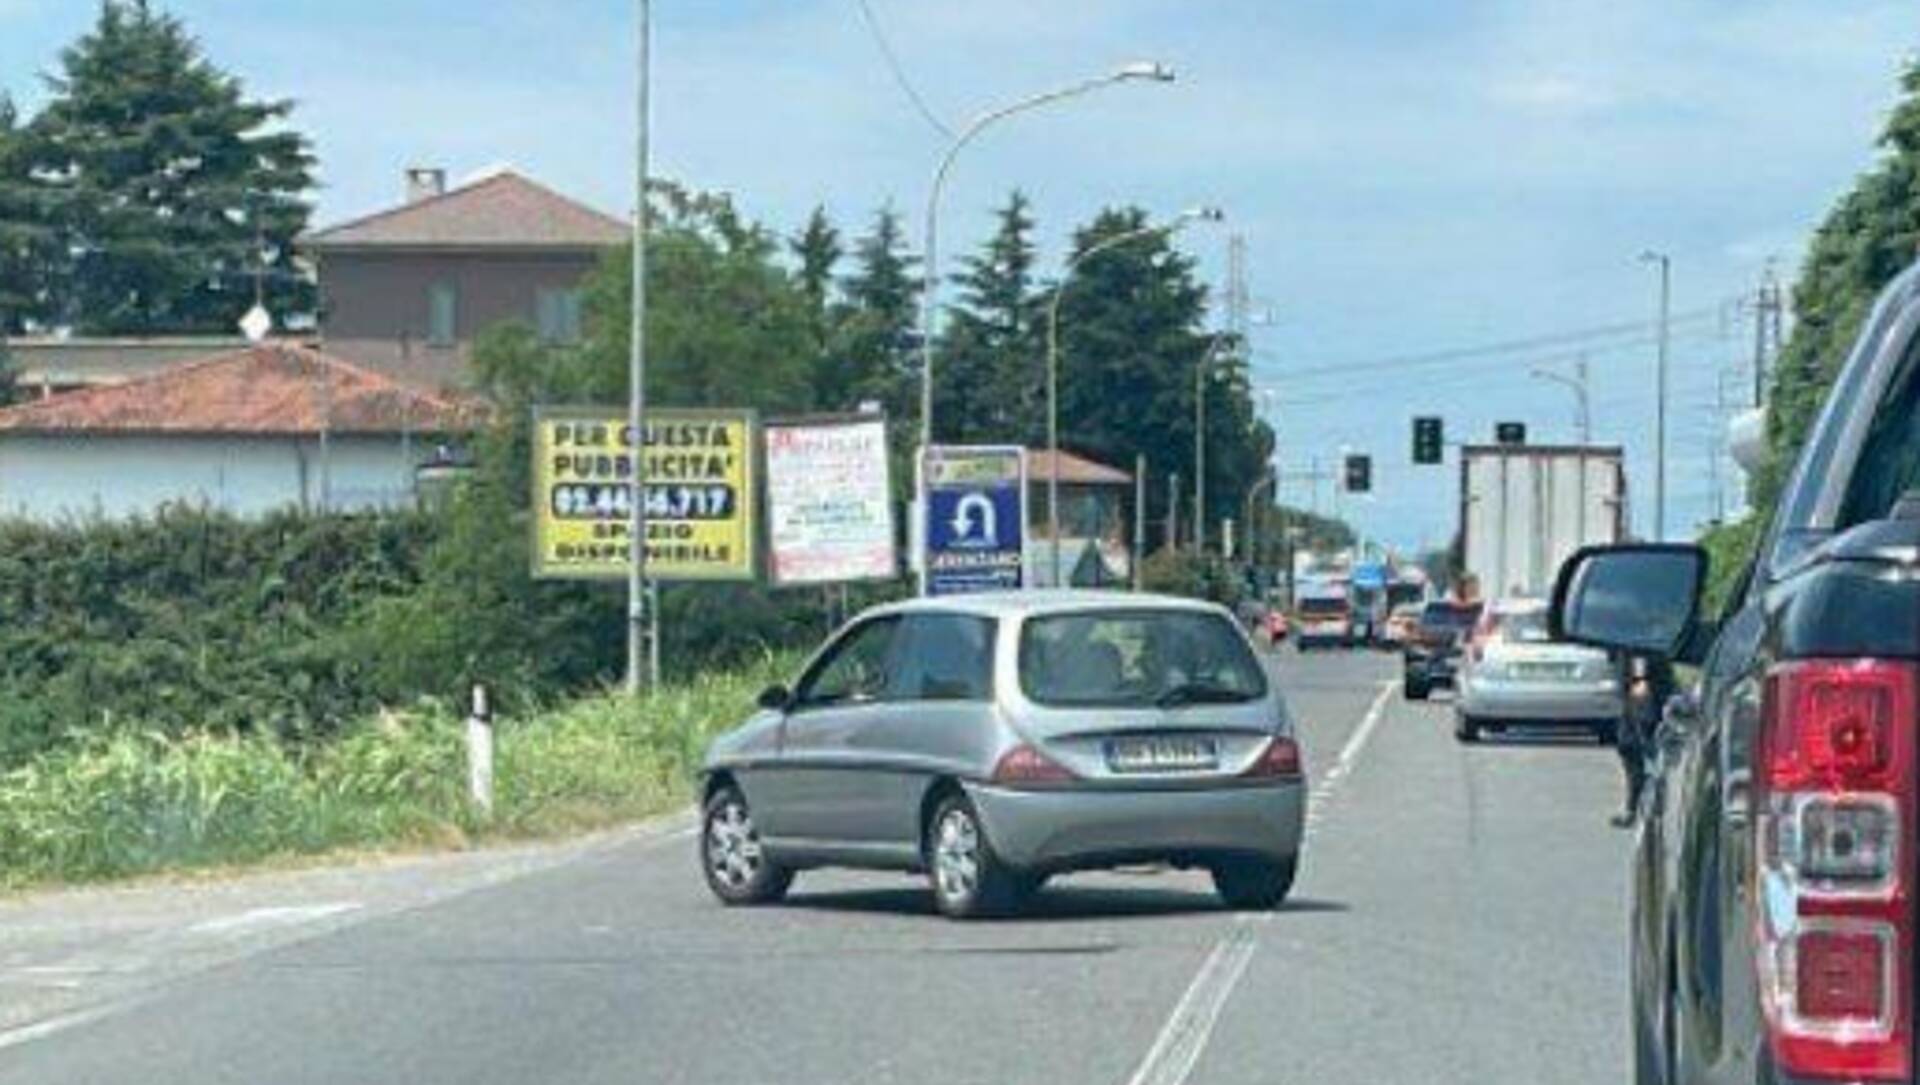 Panorama cronaca: il bilancio dell’incidente in Varesina. Ciclista investito a Limbiate